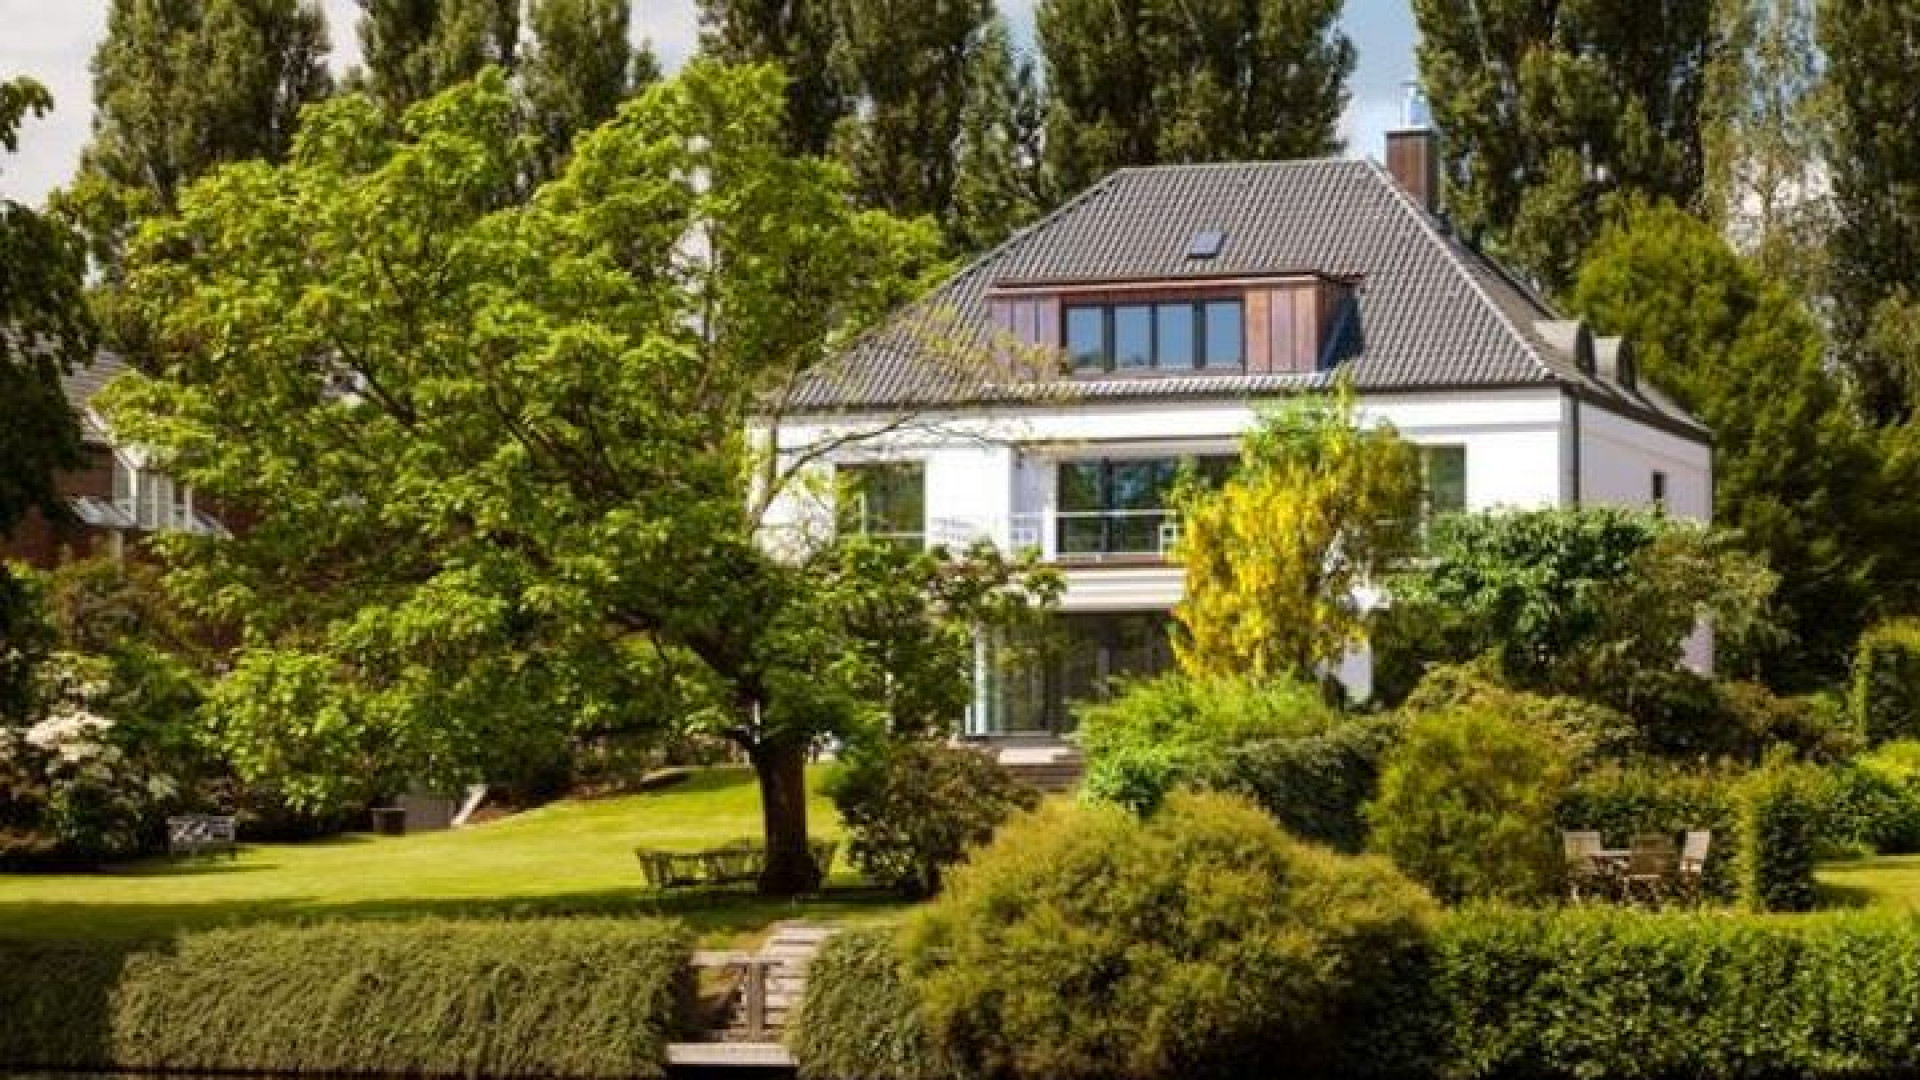 Huurprijs Hamburgse villa Sabia verlaagd. Zie foto's